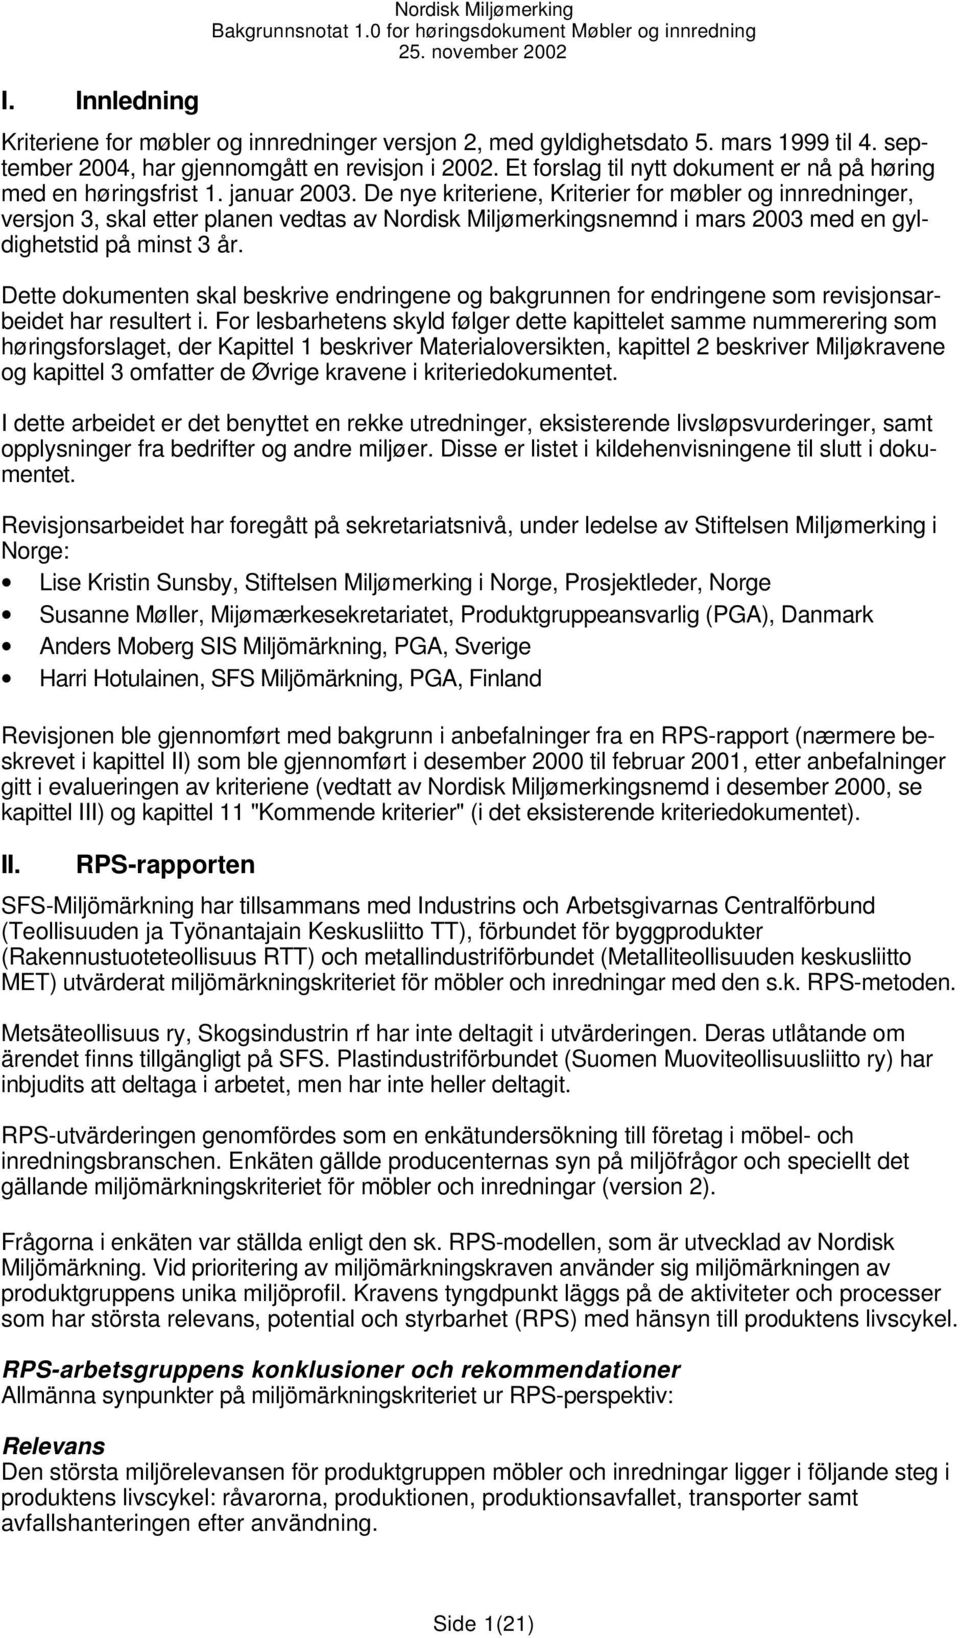 De nye kriteriene, Kriterier for møbler og innredninger, versjon 3, skal etter planen vedtas av Nordisk Miljømerkingsnemnd i mars 2003 med en gyldighetstid på minst 3 år.